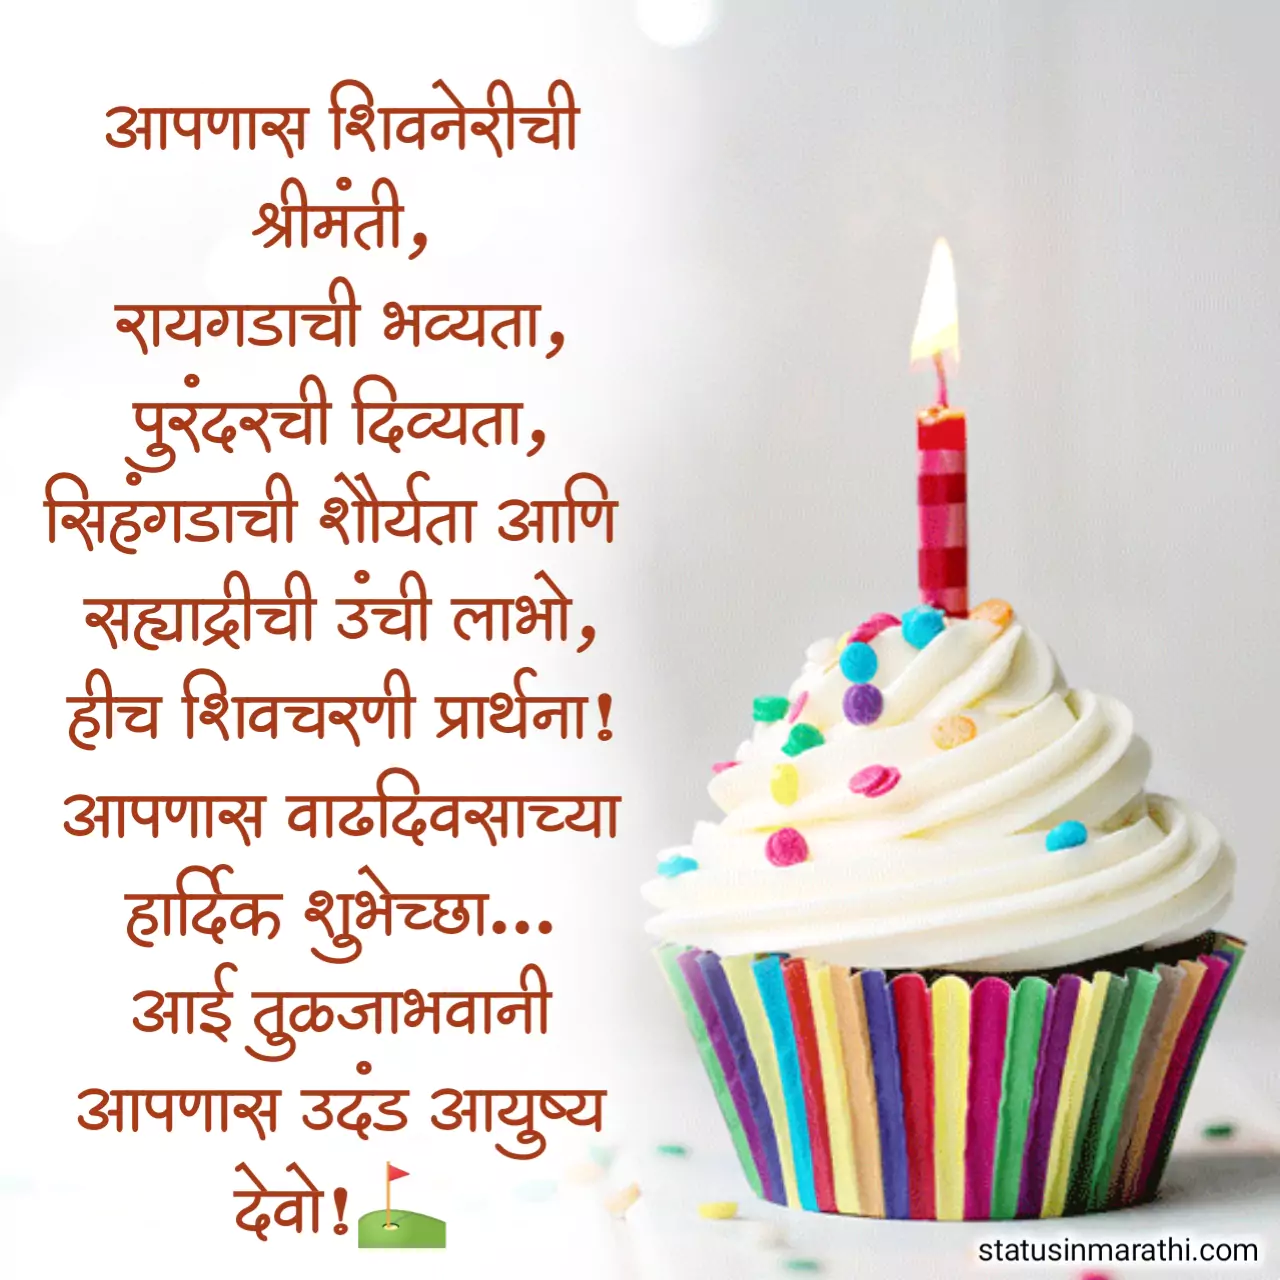 Birthday wishes in marathi shivmay